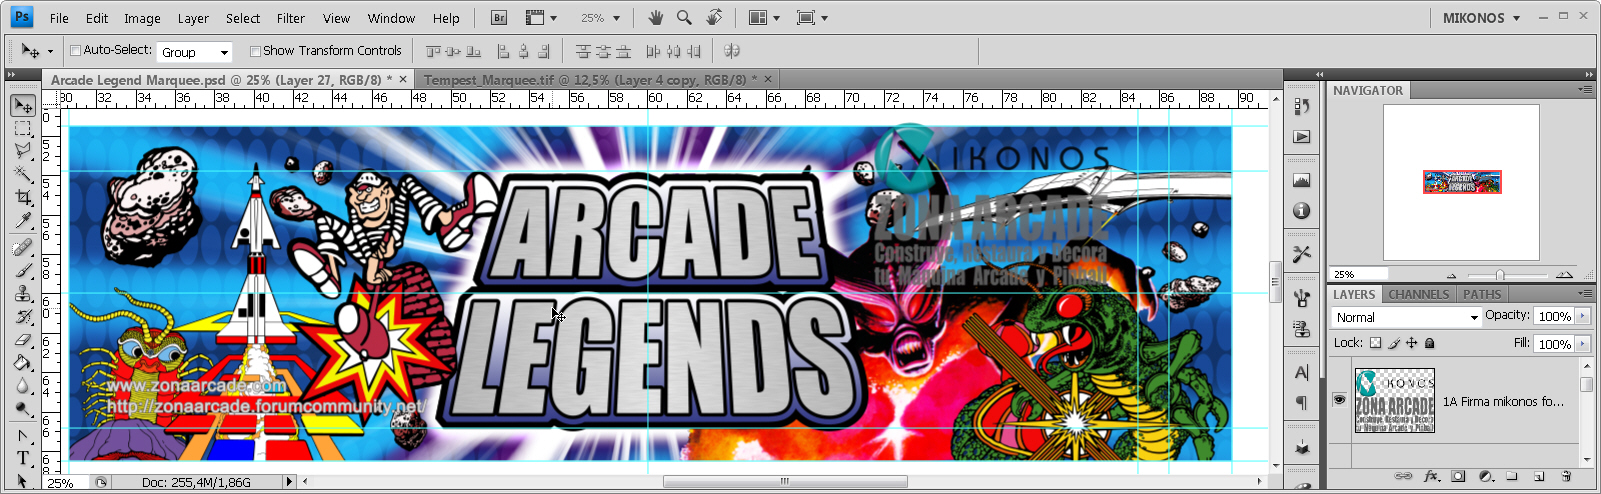 Arcade Legends Marquee. Reproduced Mikonos1